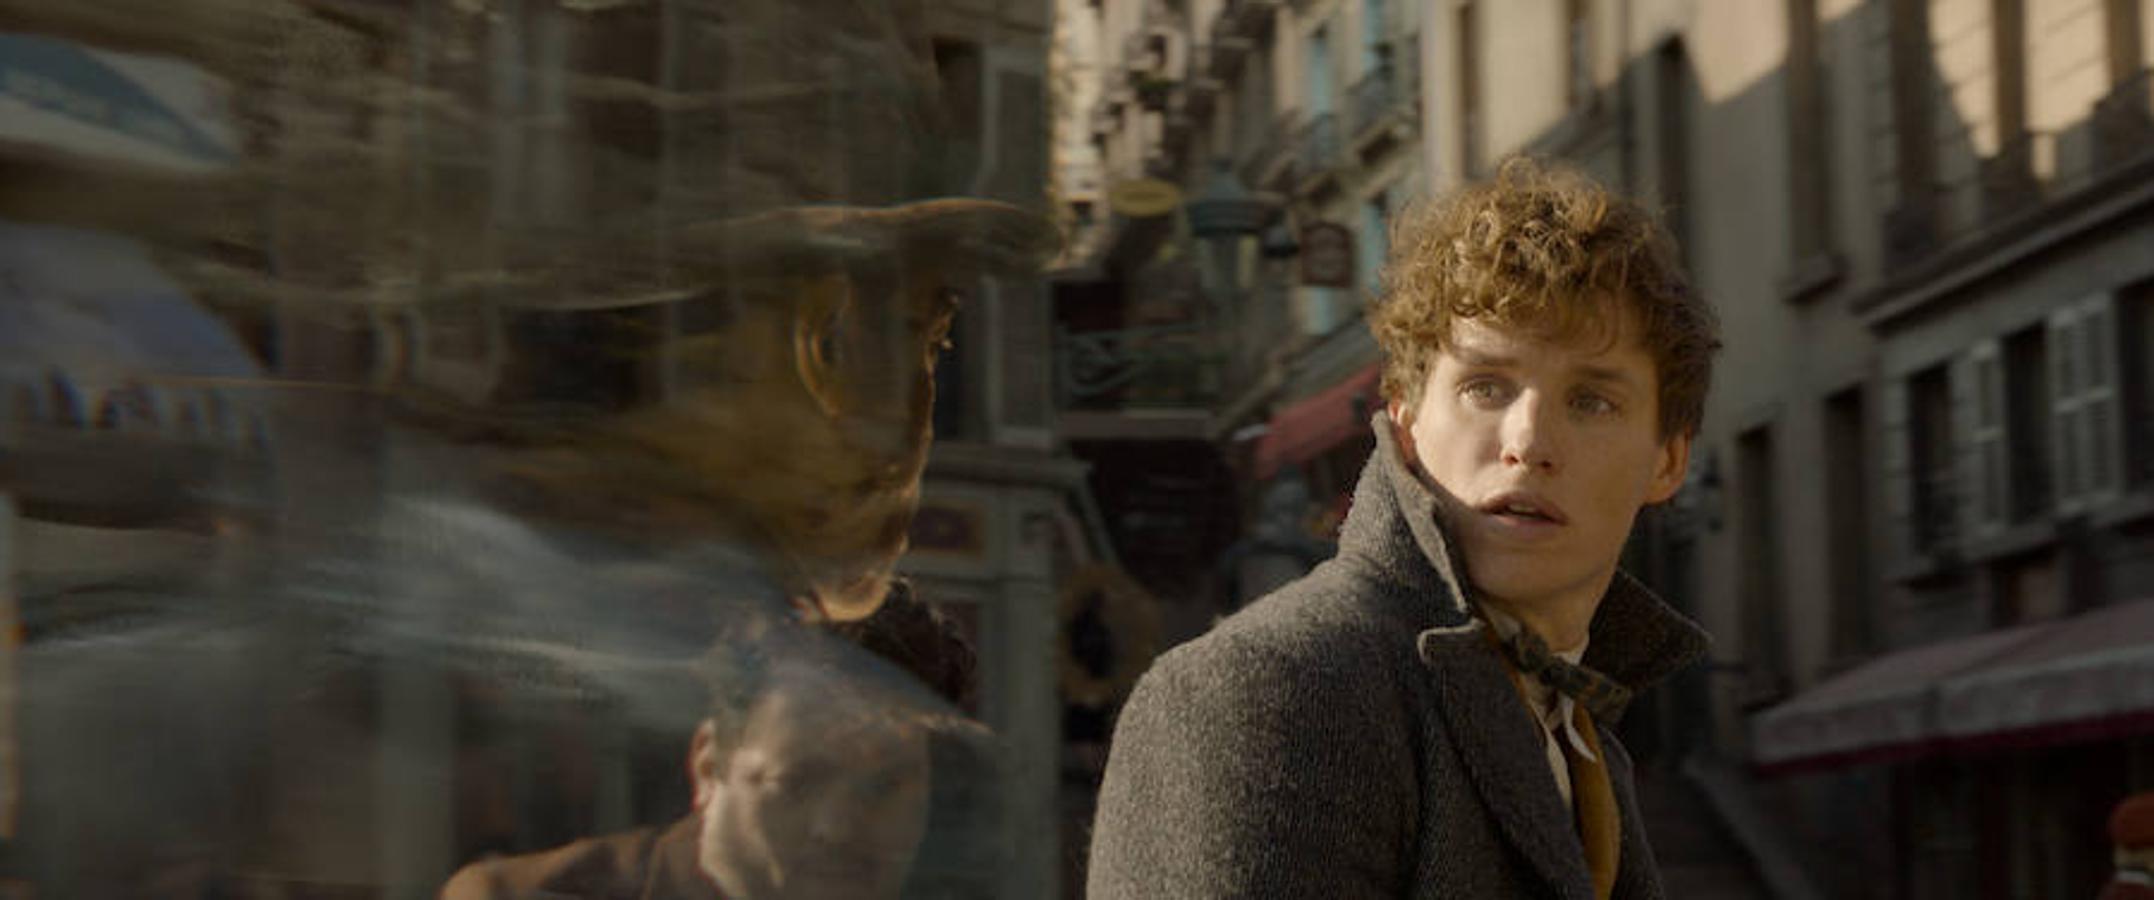 Galería: Las imágenes de la nueva película del universo Harry Potter